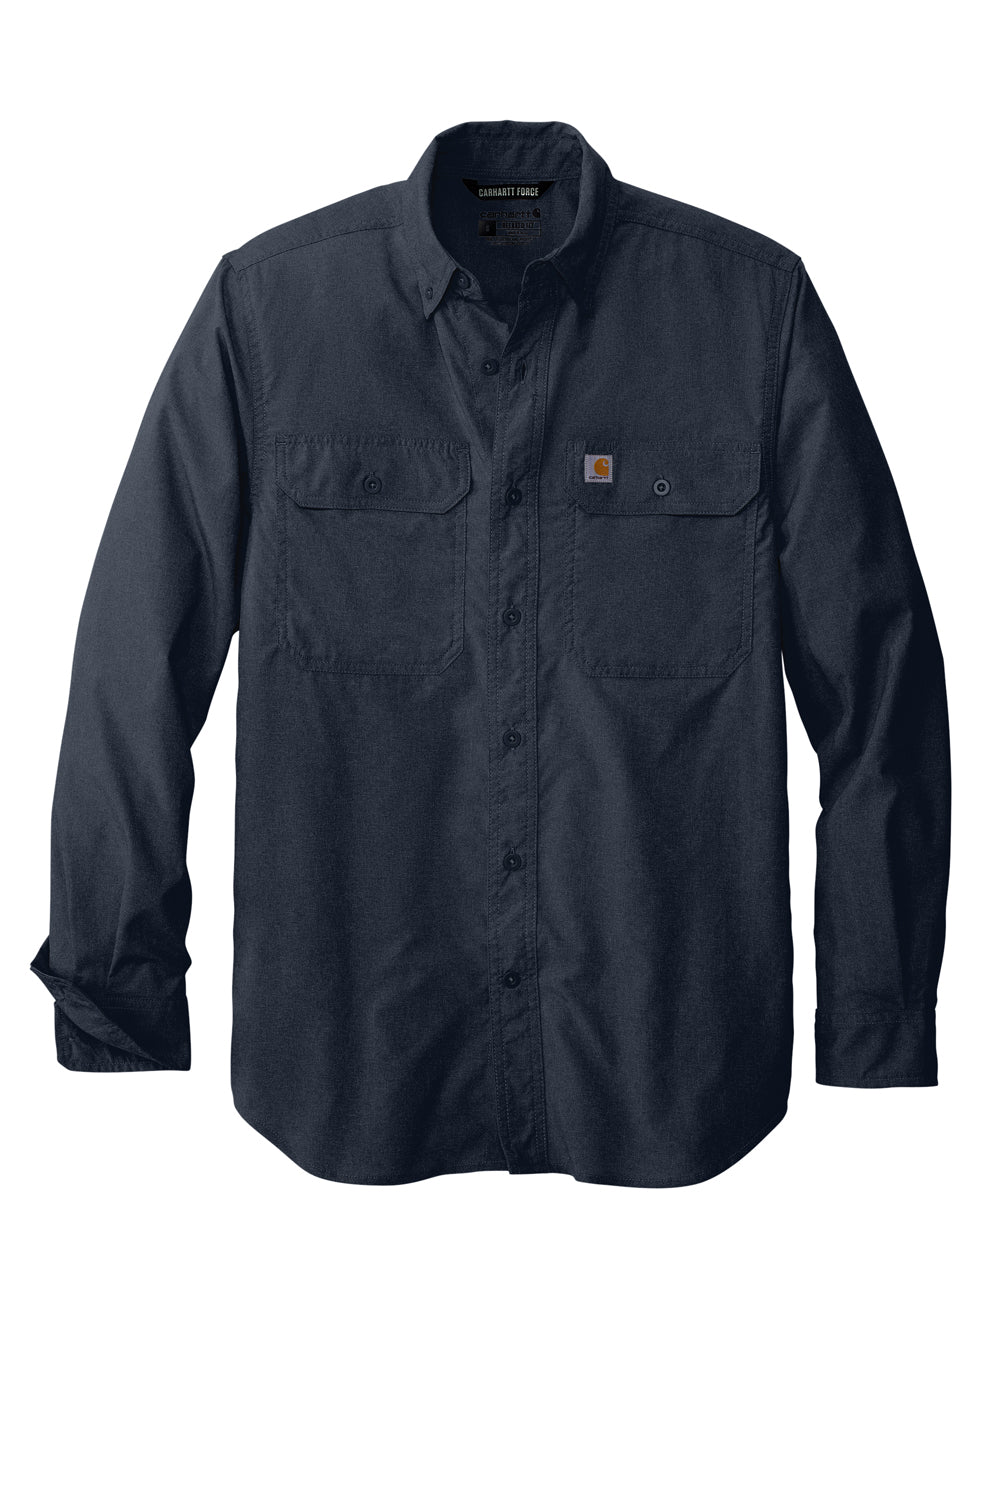 Carhartt Rugged Professional Work Long Sleeve Shirt Blue 2XL